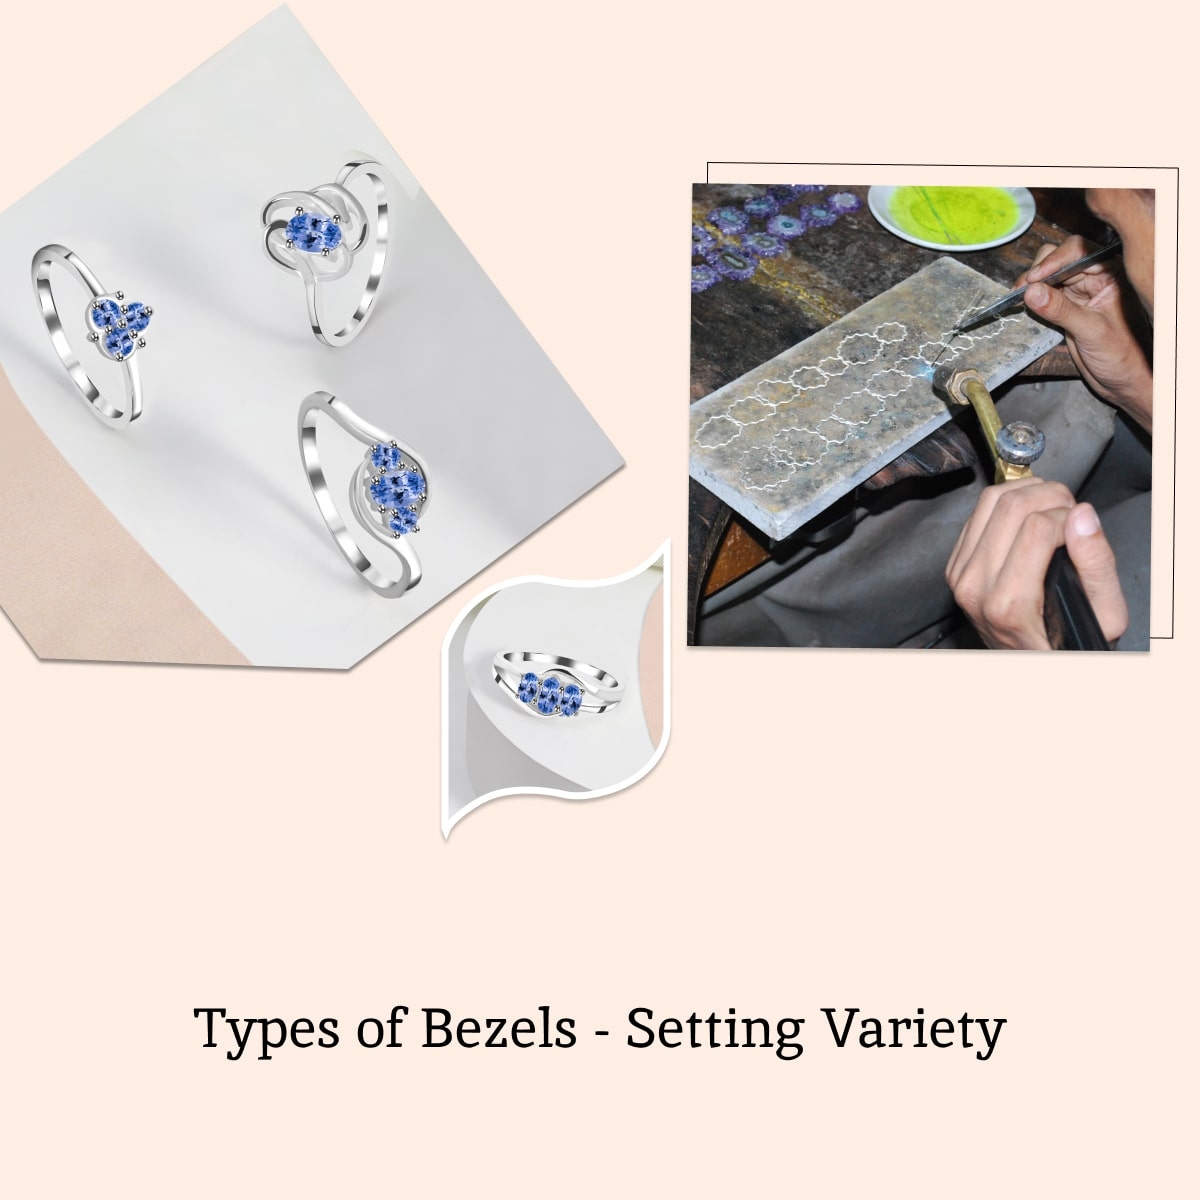 Types of Bezel Settings